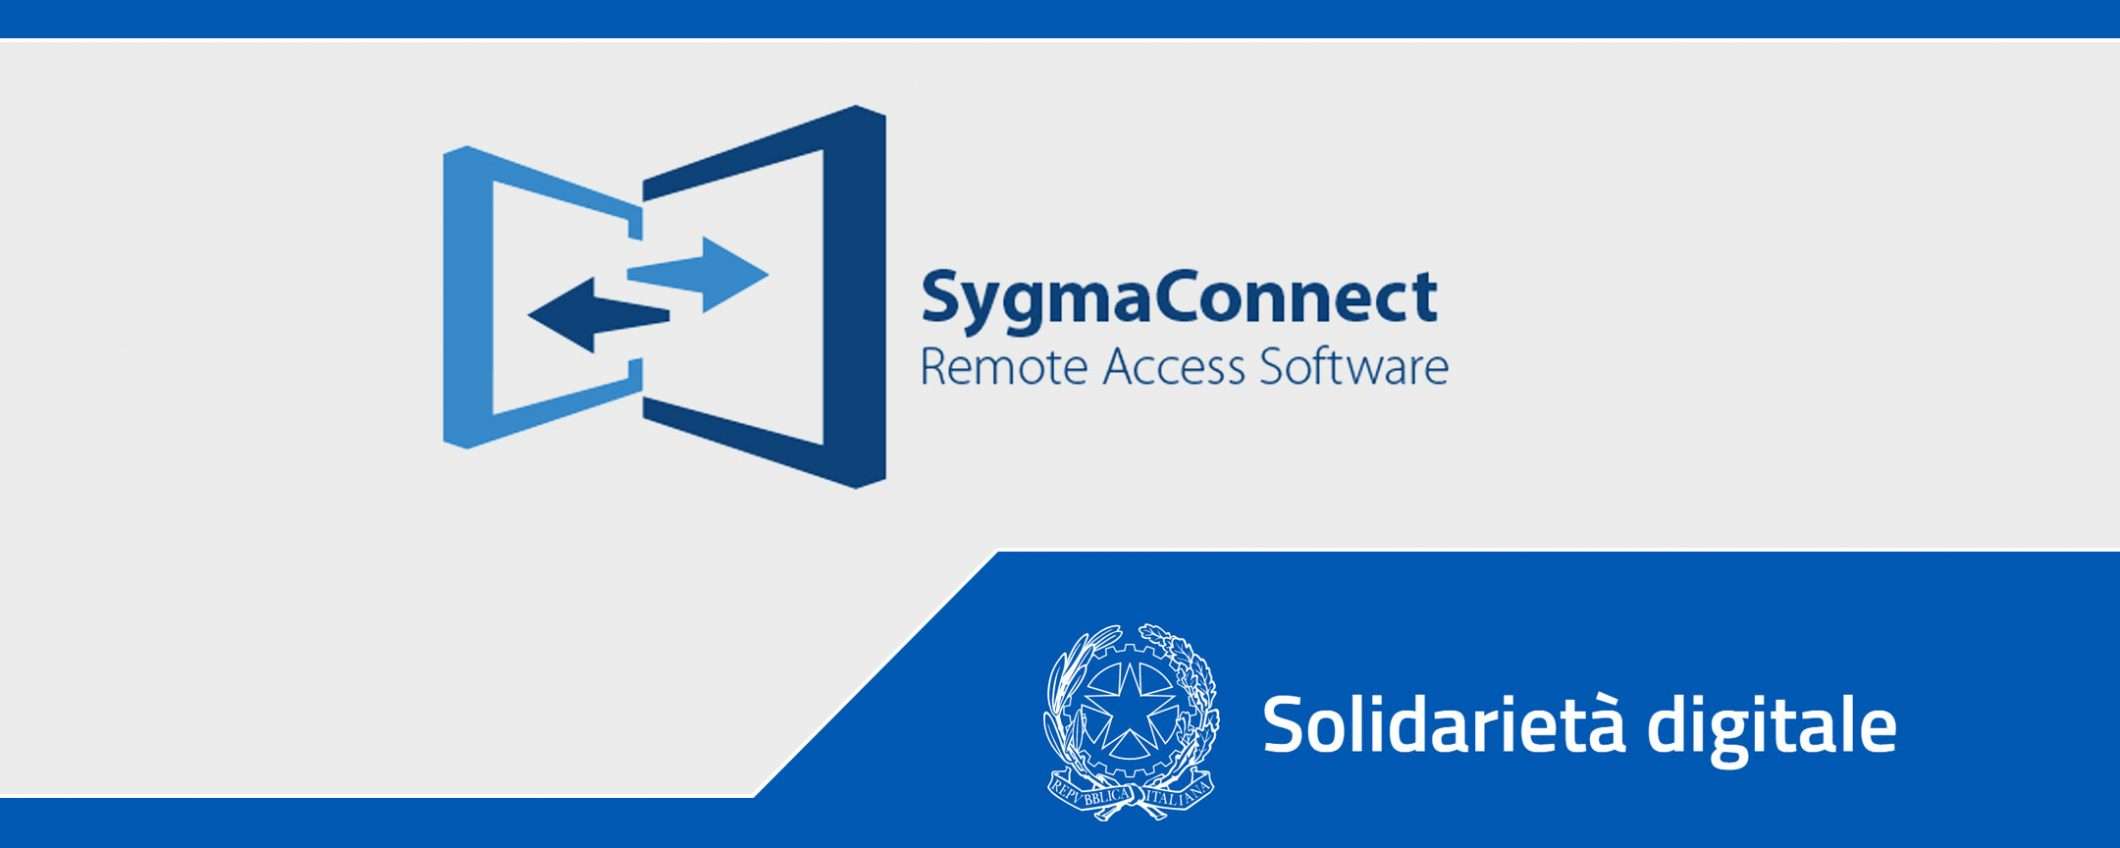 Solidarietà Digitale: c'è anche Sygma Connect